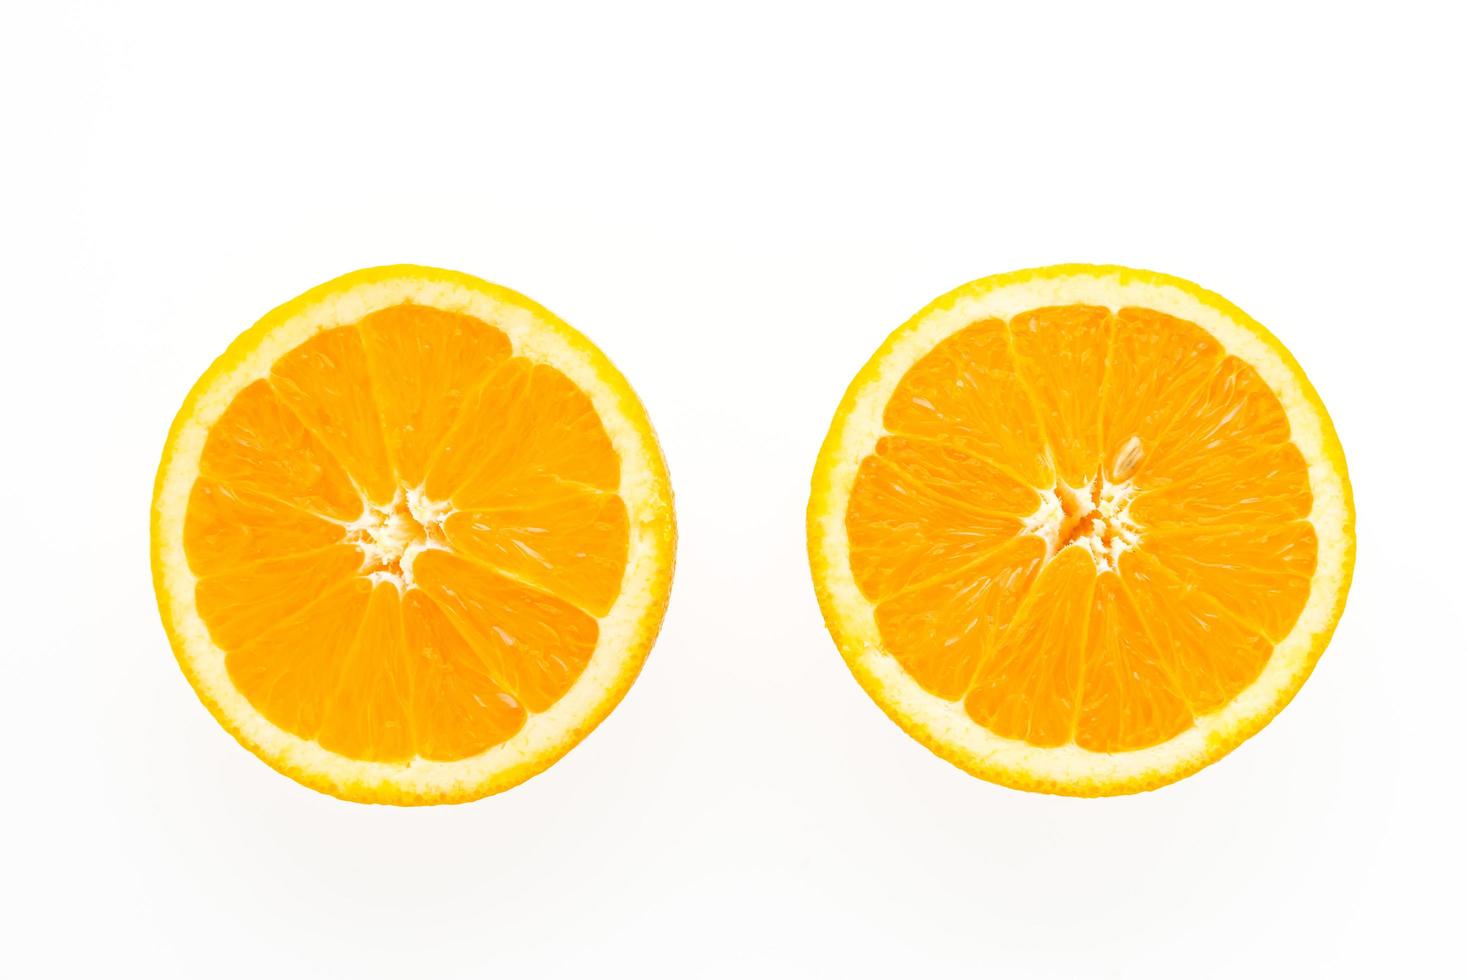 oranje fruit dat op witte achtergrond wordt geïsoleerd foto